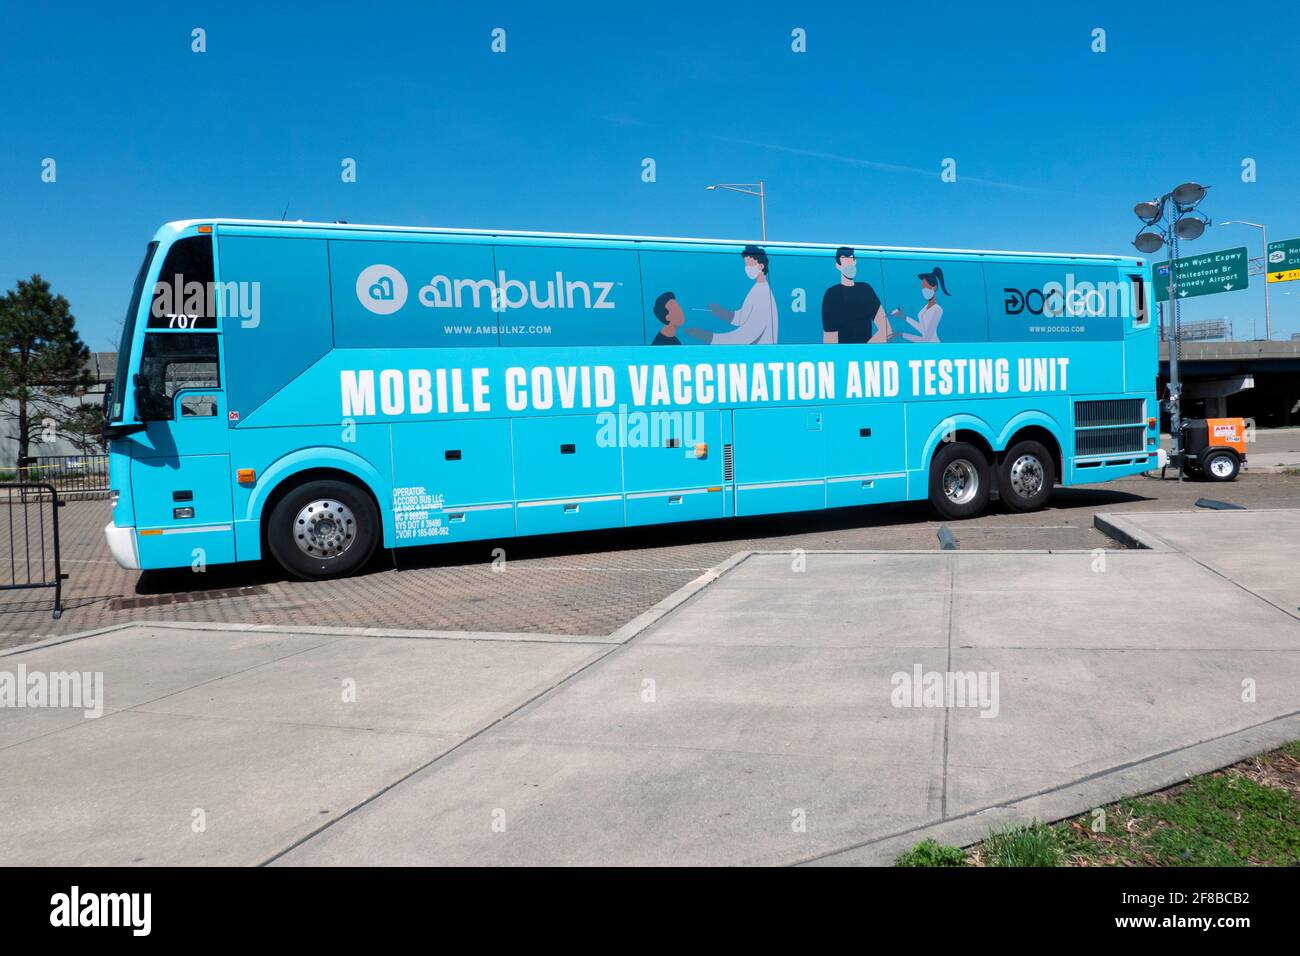 Un'unità mobile di vaccinazione e test di covid AMBULNZ parcheggiata vicino al Citi Field a Flushing, Queens, New York City. Foto Stock